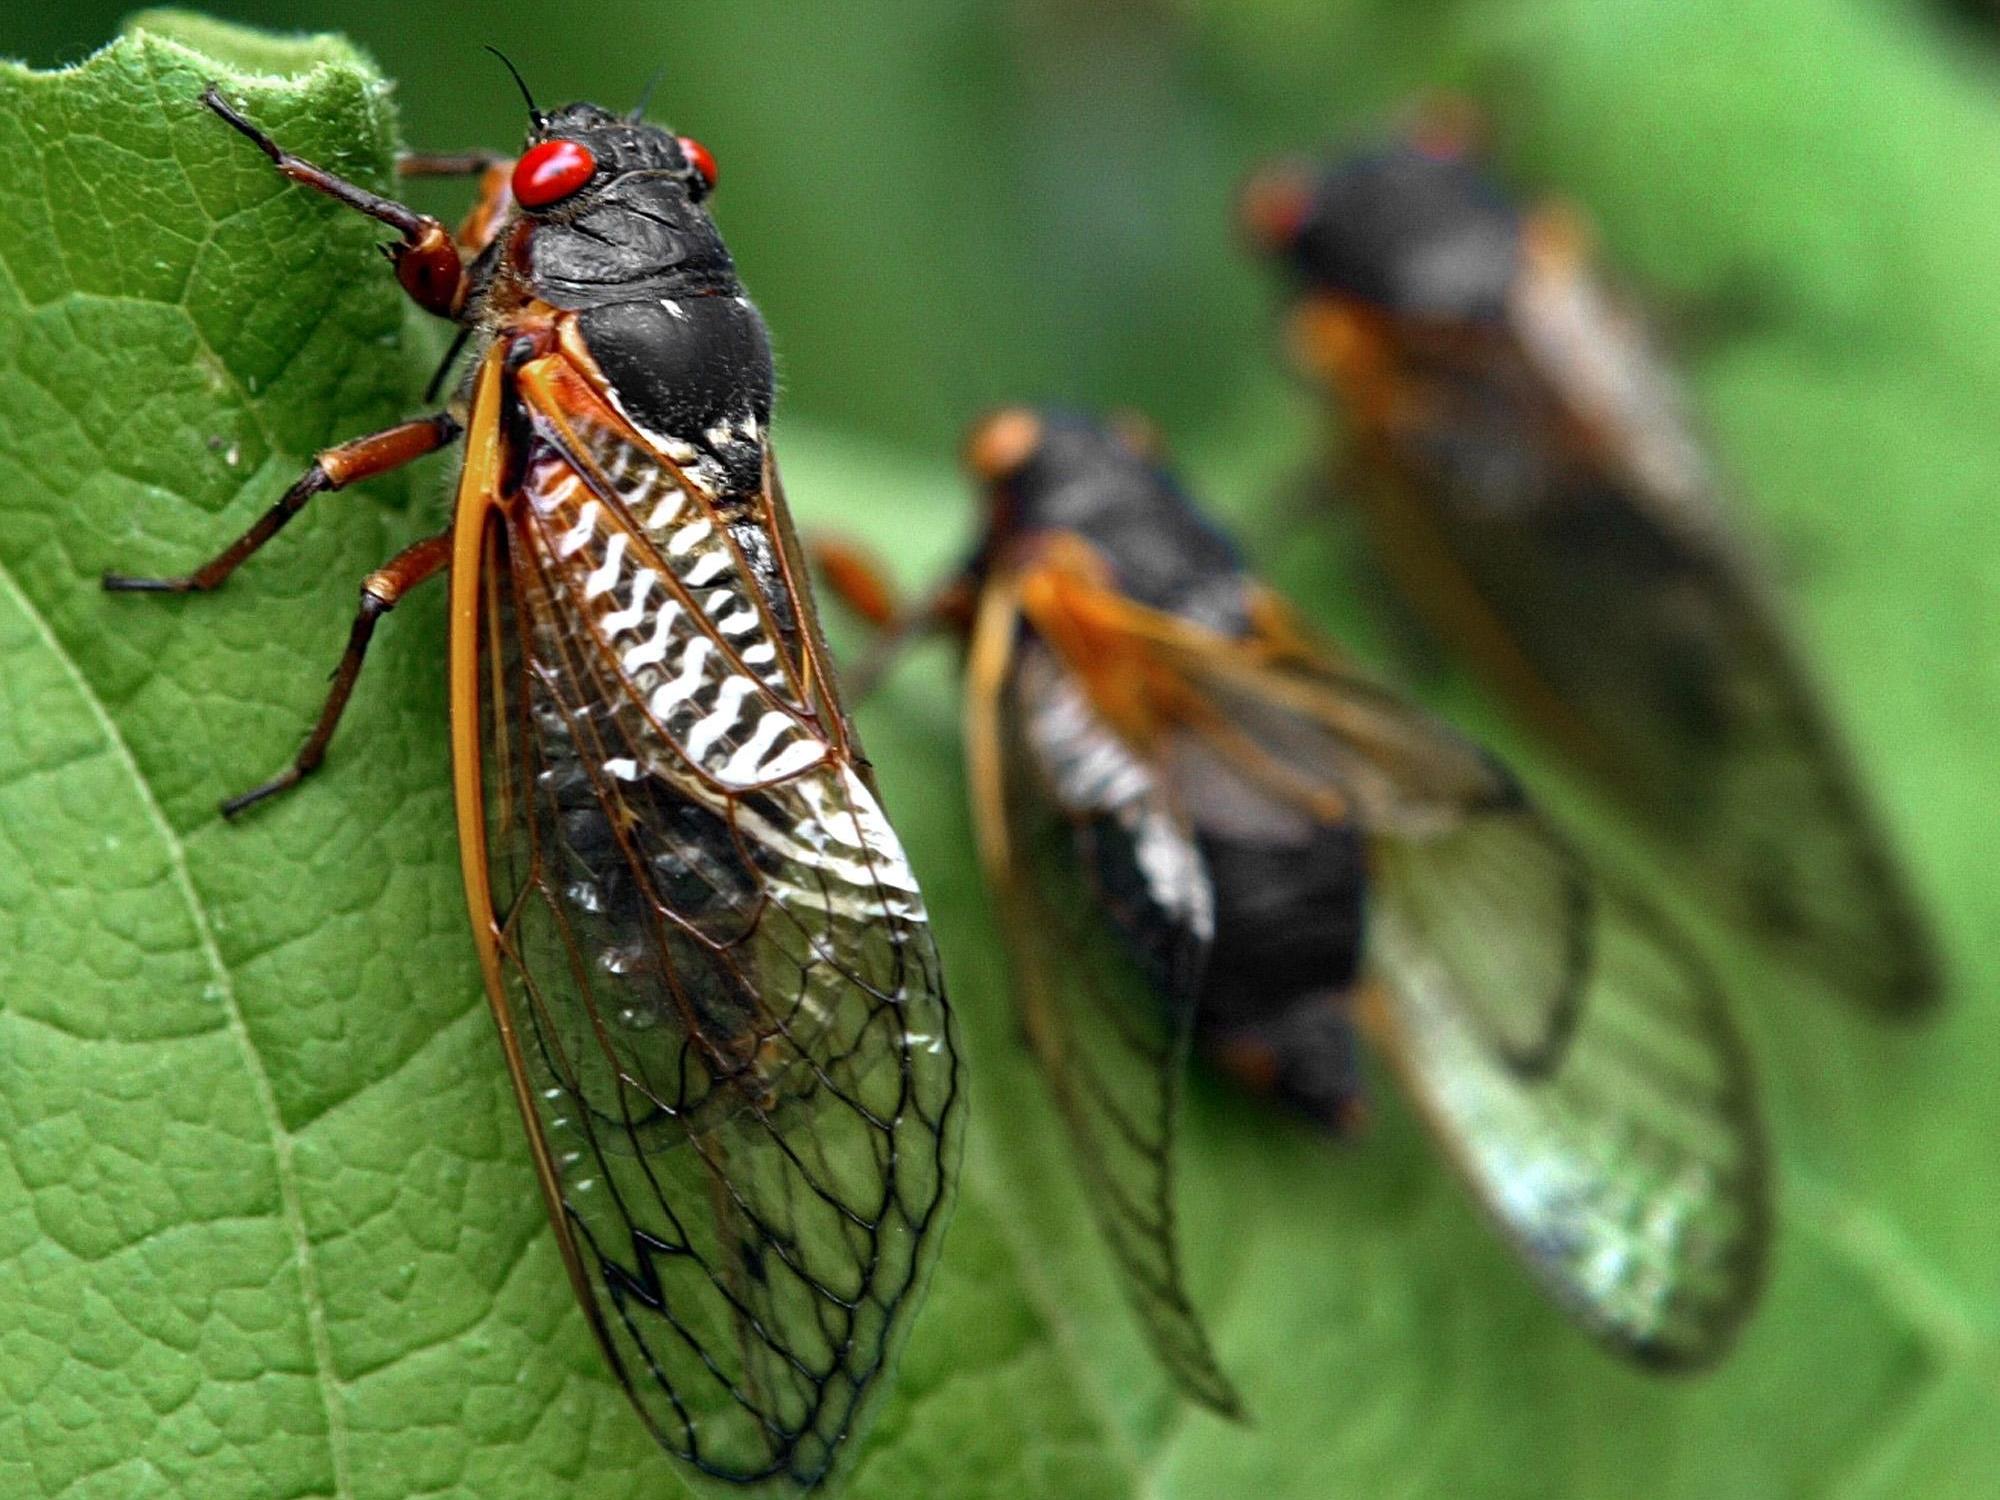 Vierwöchige Insektenplage in den USA.